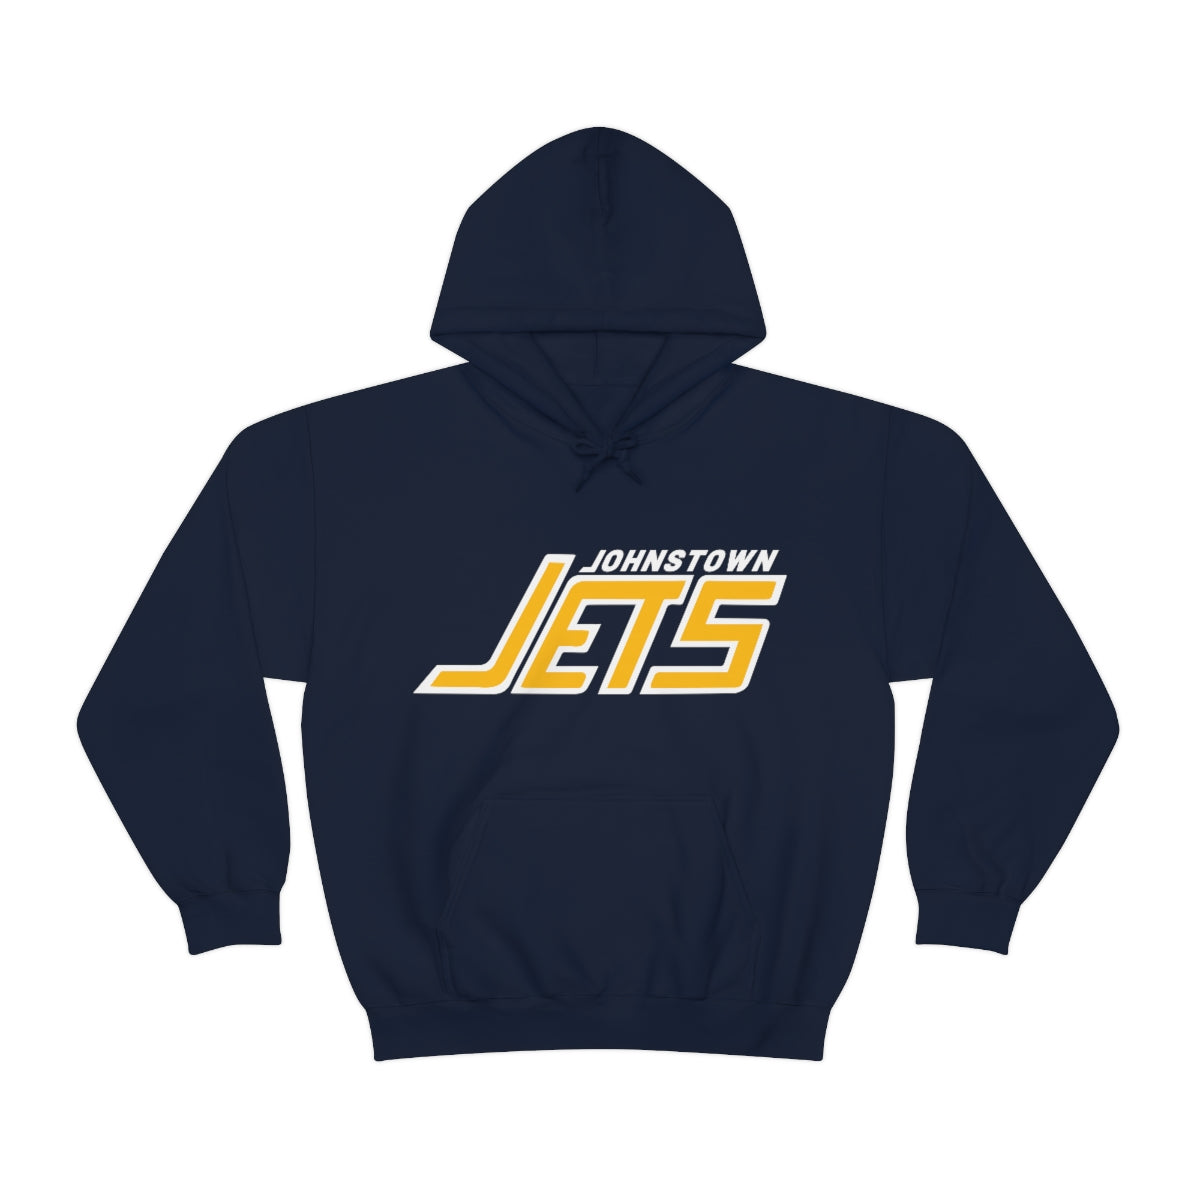 Johnstown Jets Hoodie